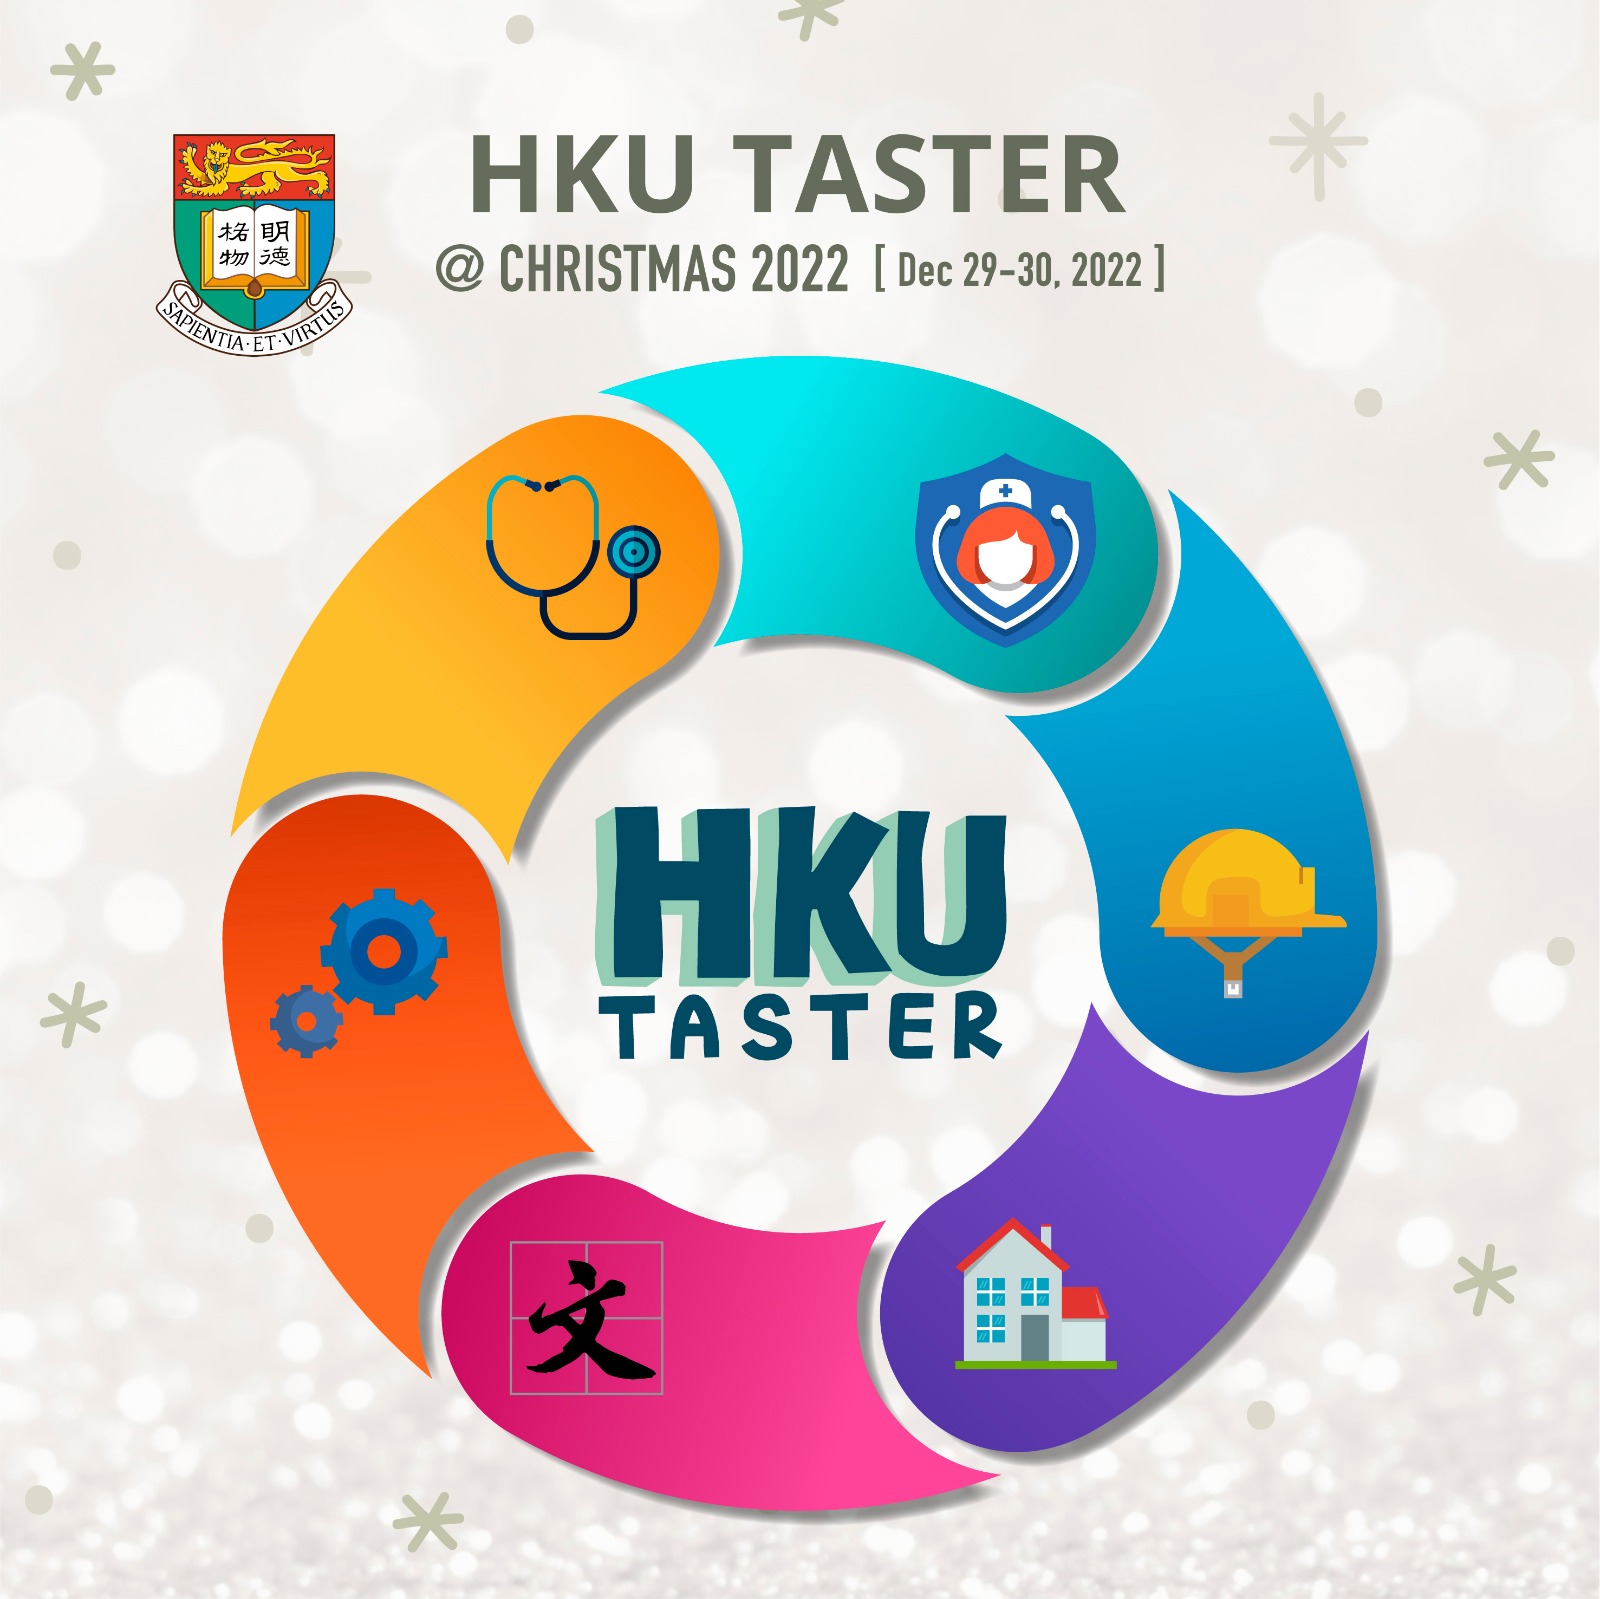 HKU Taster @ Christmas 2022